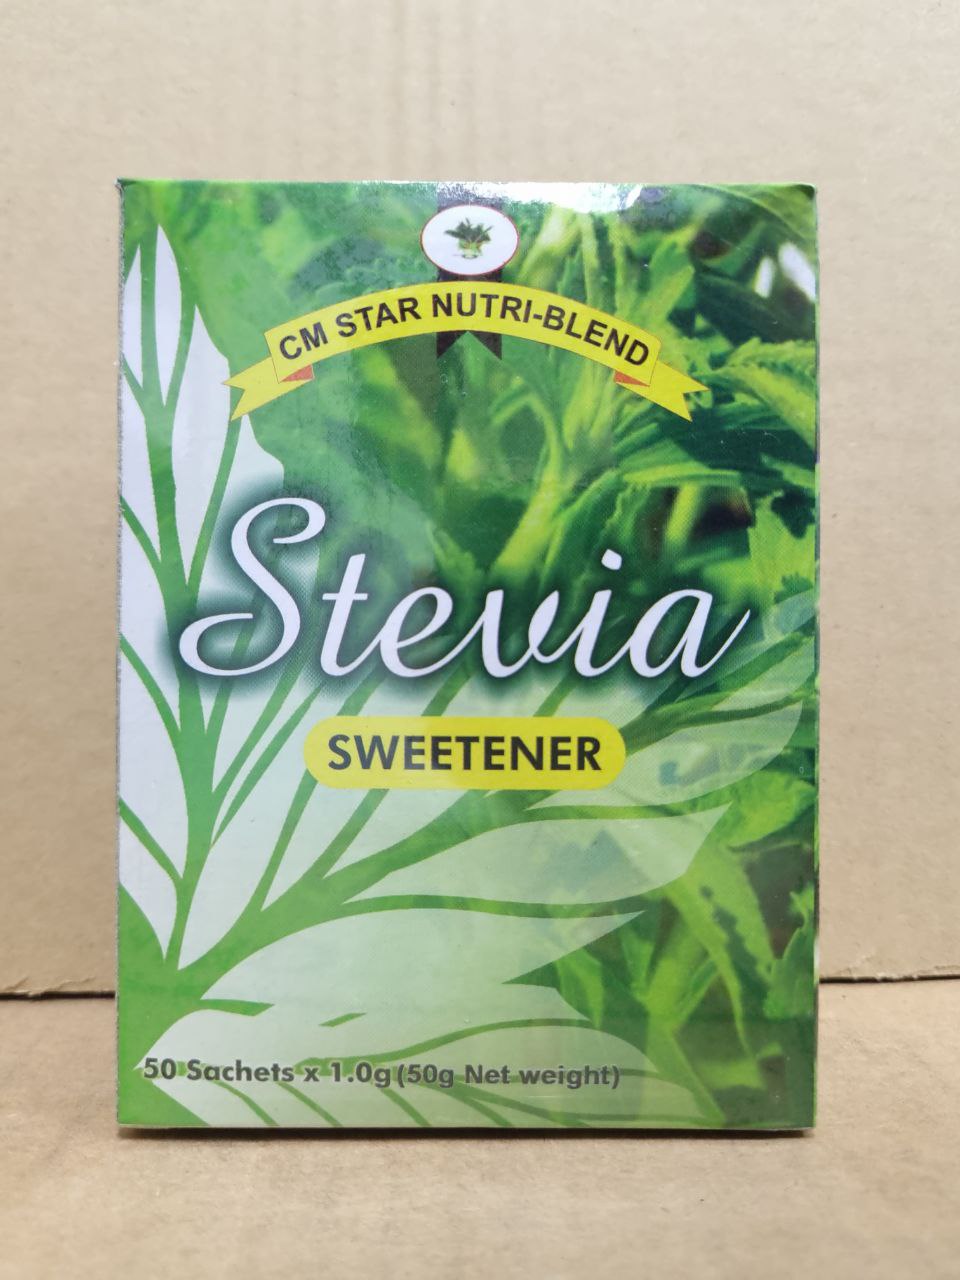 CM Star Nutri-blend Stevia Sweetener